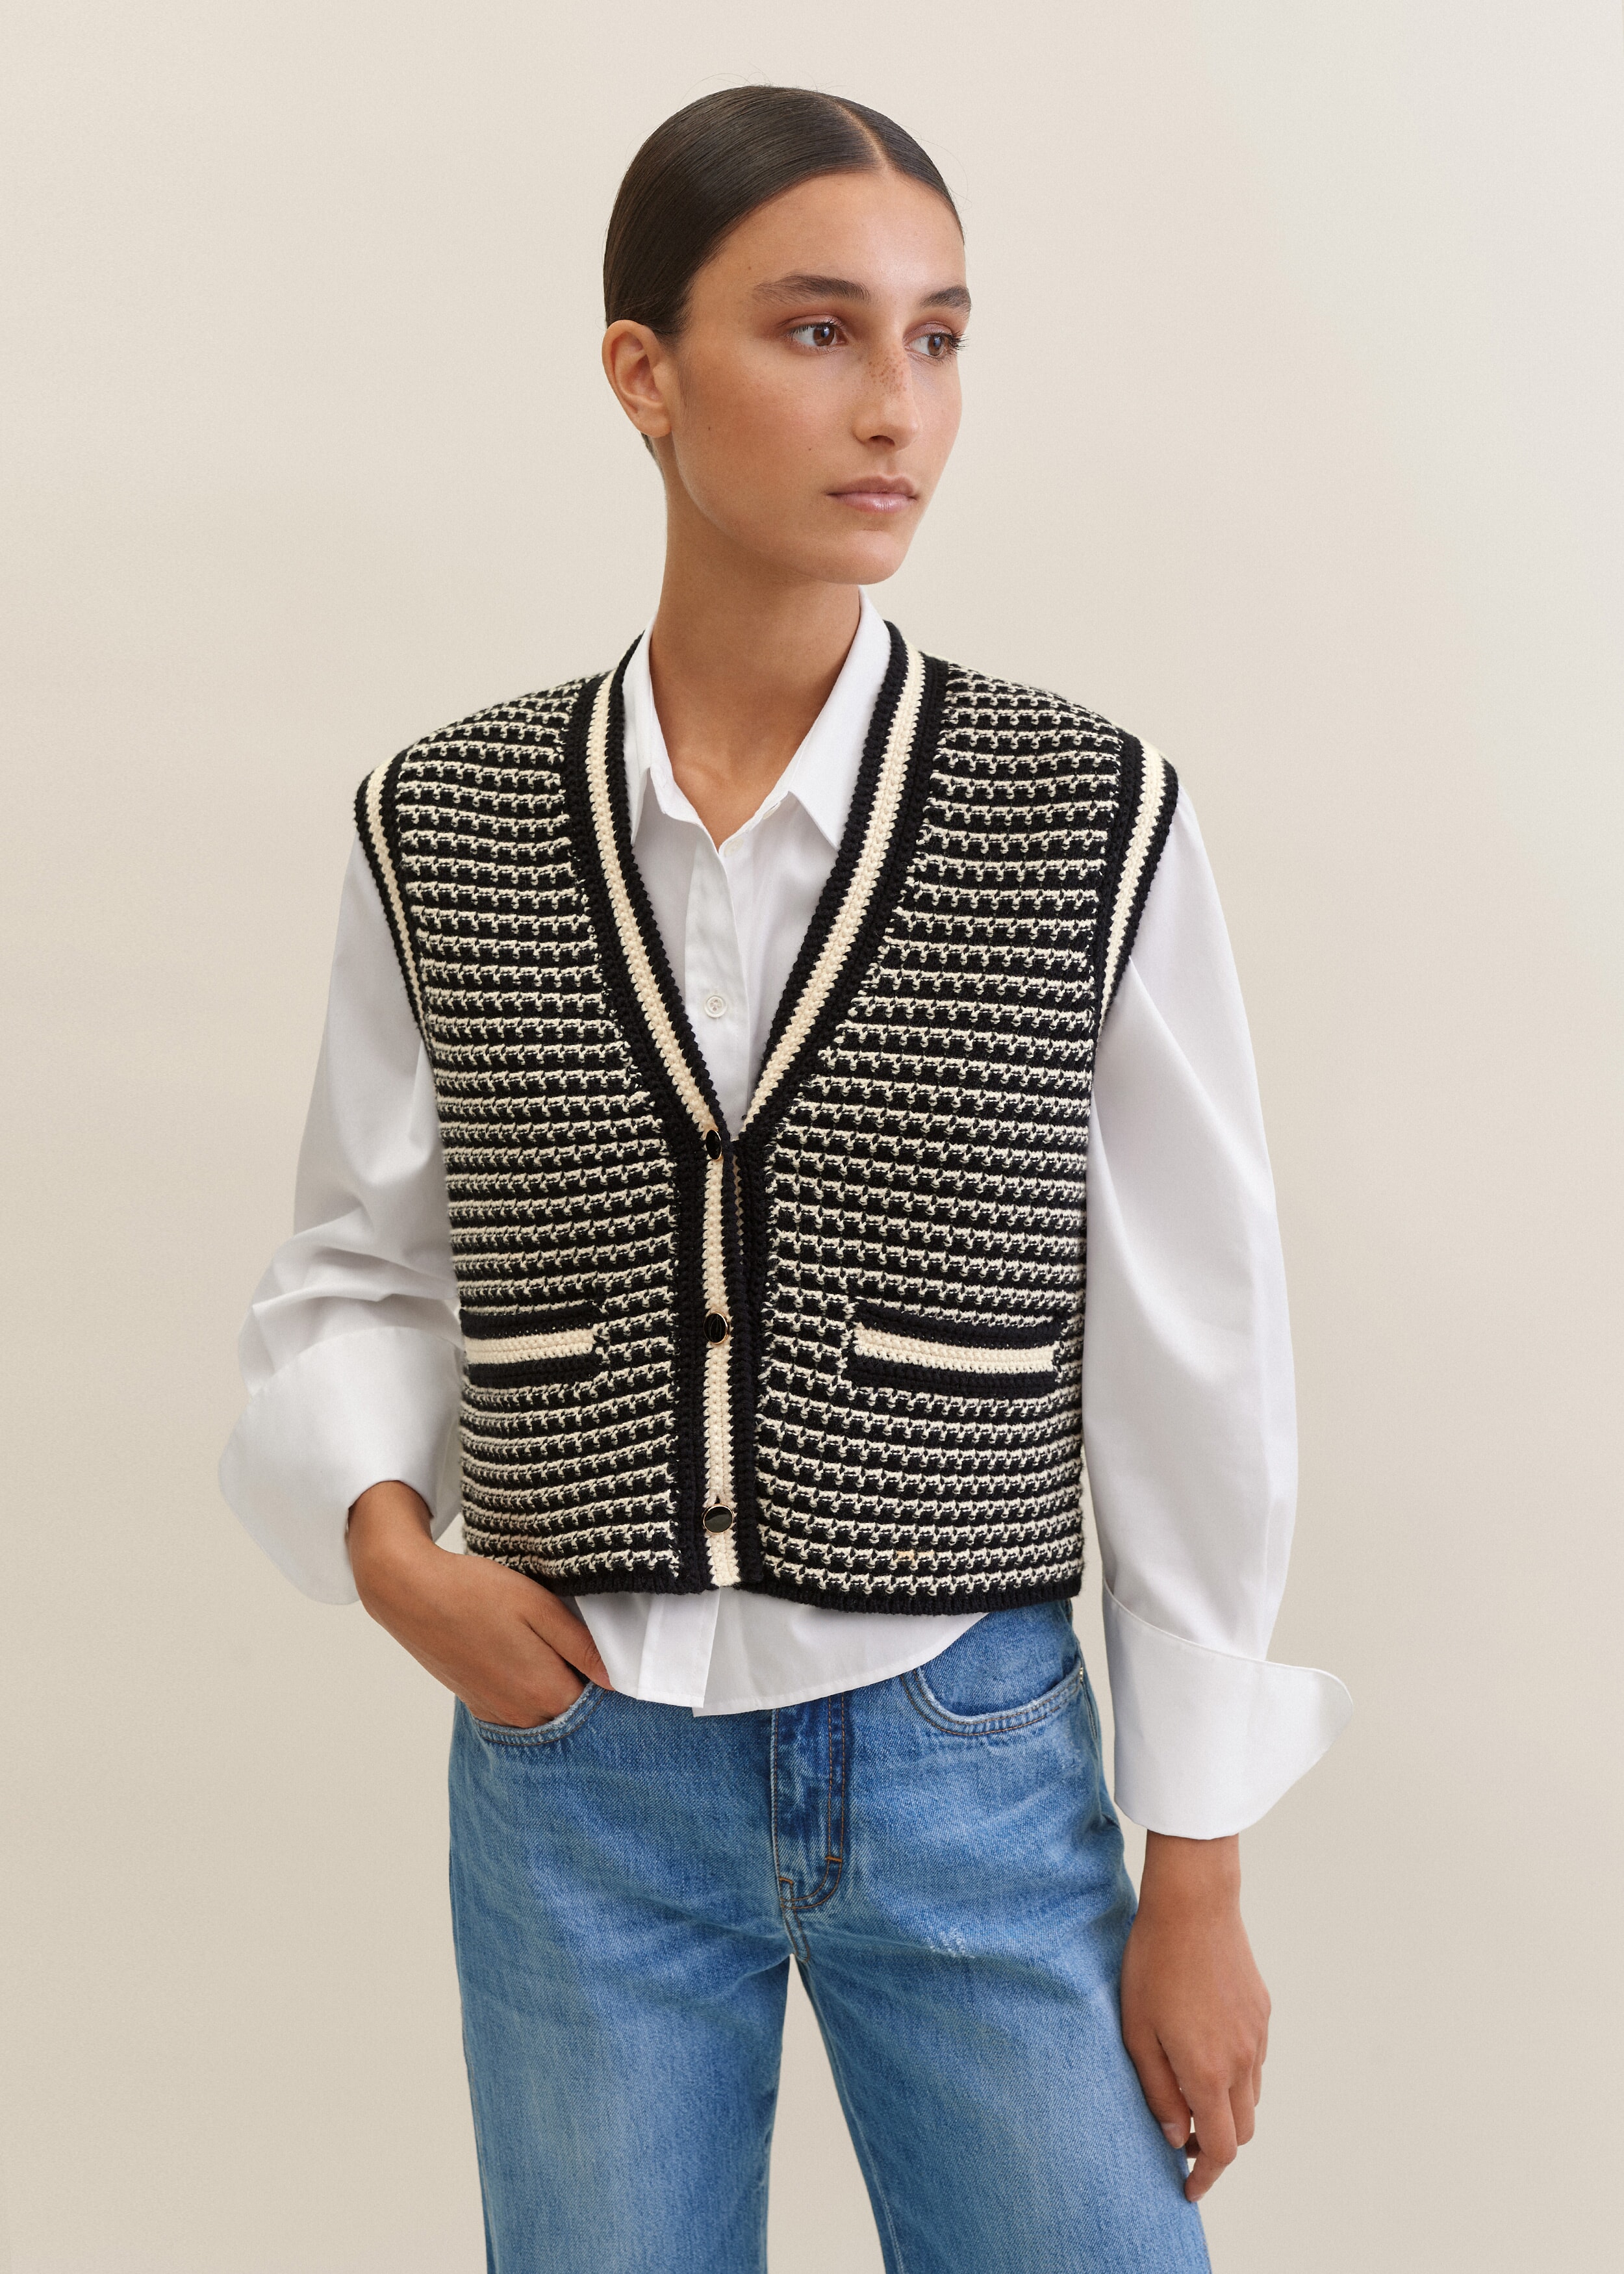 Cotton Cashmere Jacquard Cropped Vest Black/Cream